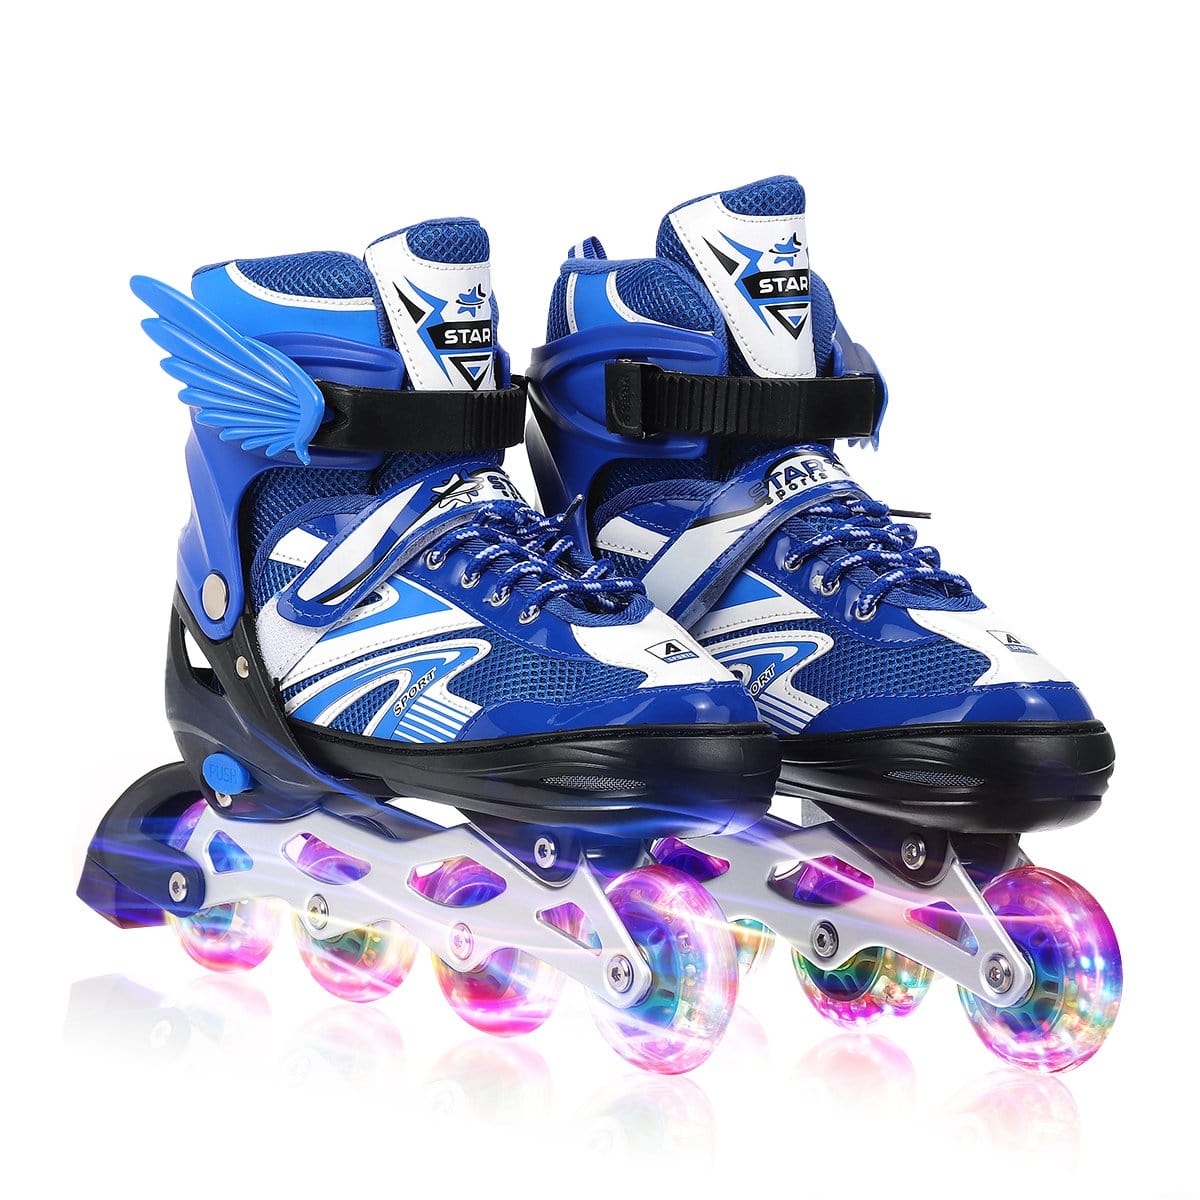 Inline Skates Sets with 4 LED Flashling